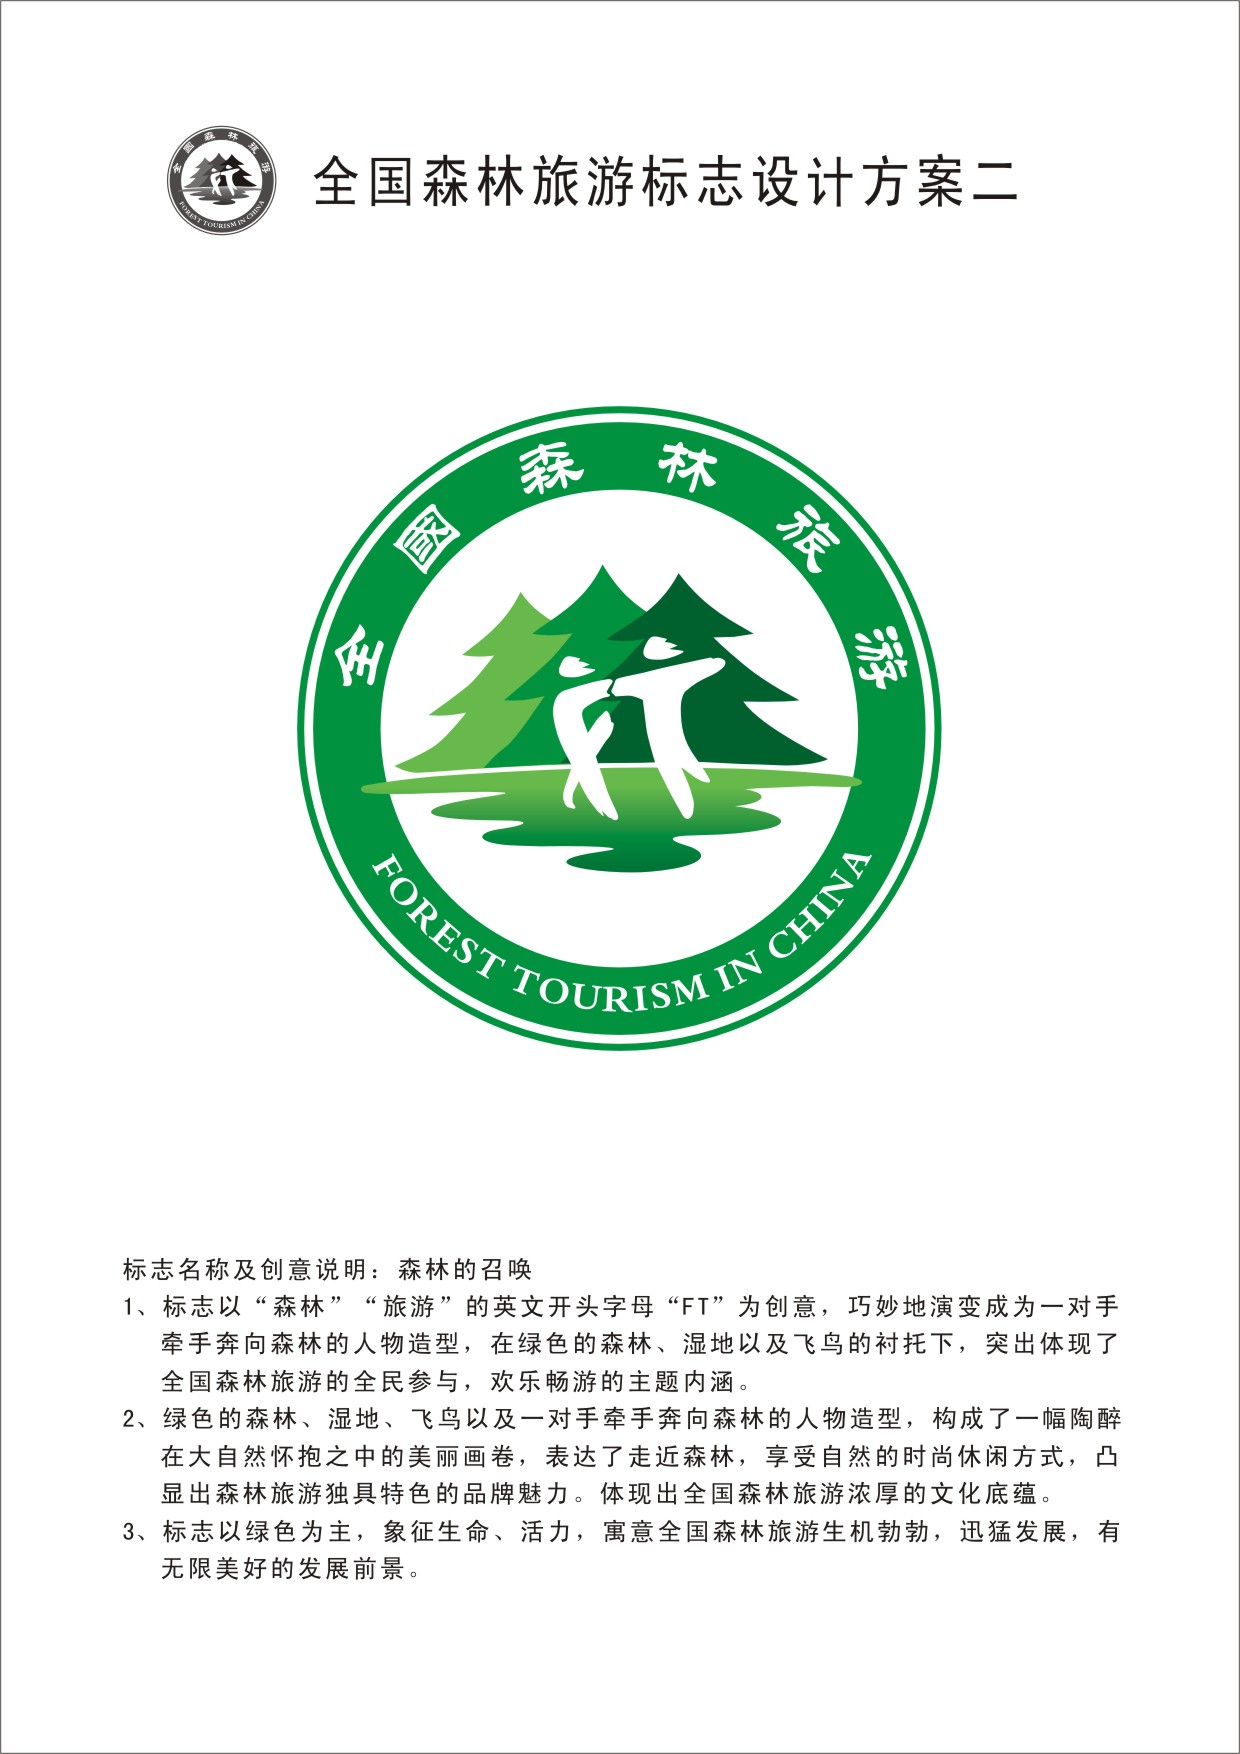 全国森林旅游标志设计方案二